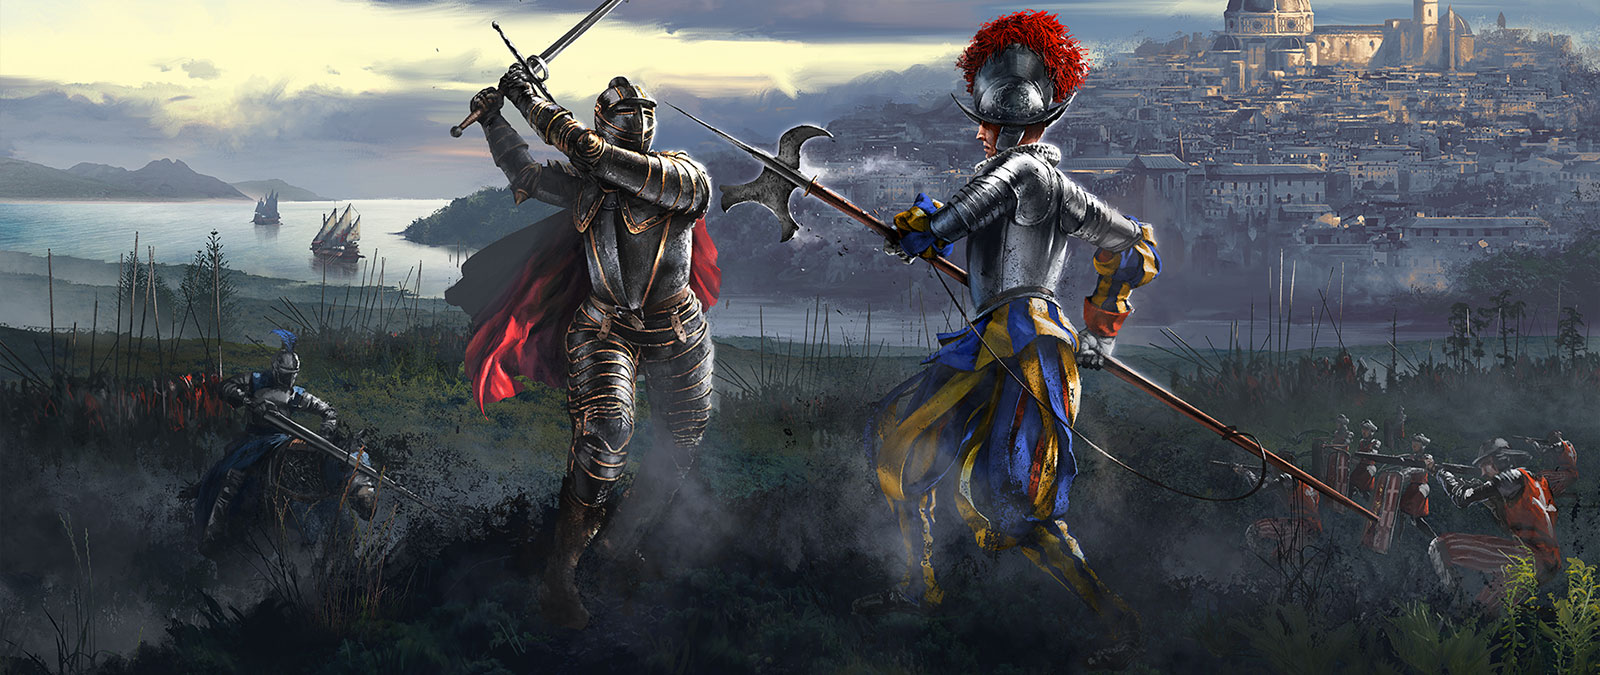 Deux chevaliers s’affrontent alors que leurs armées se préparent à combattre.